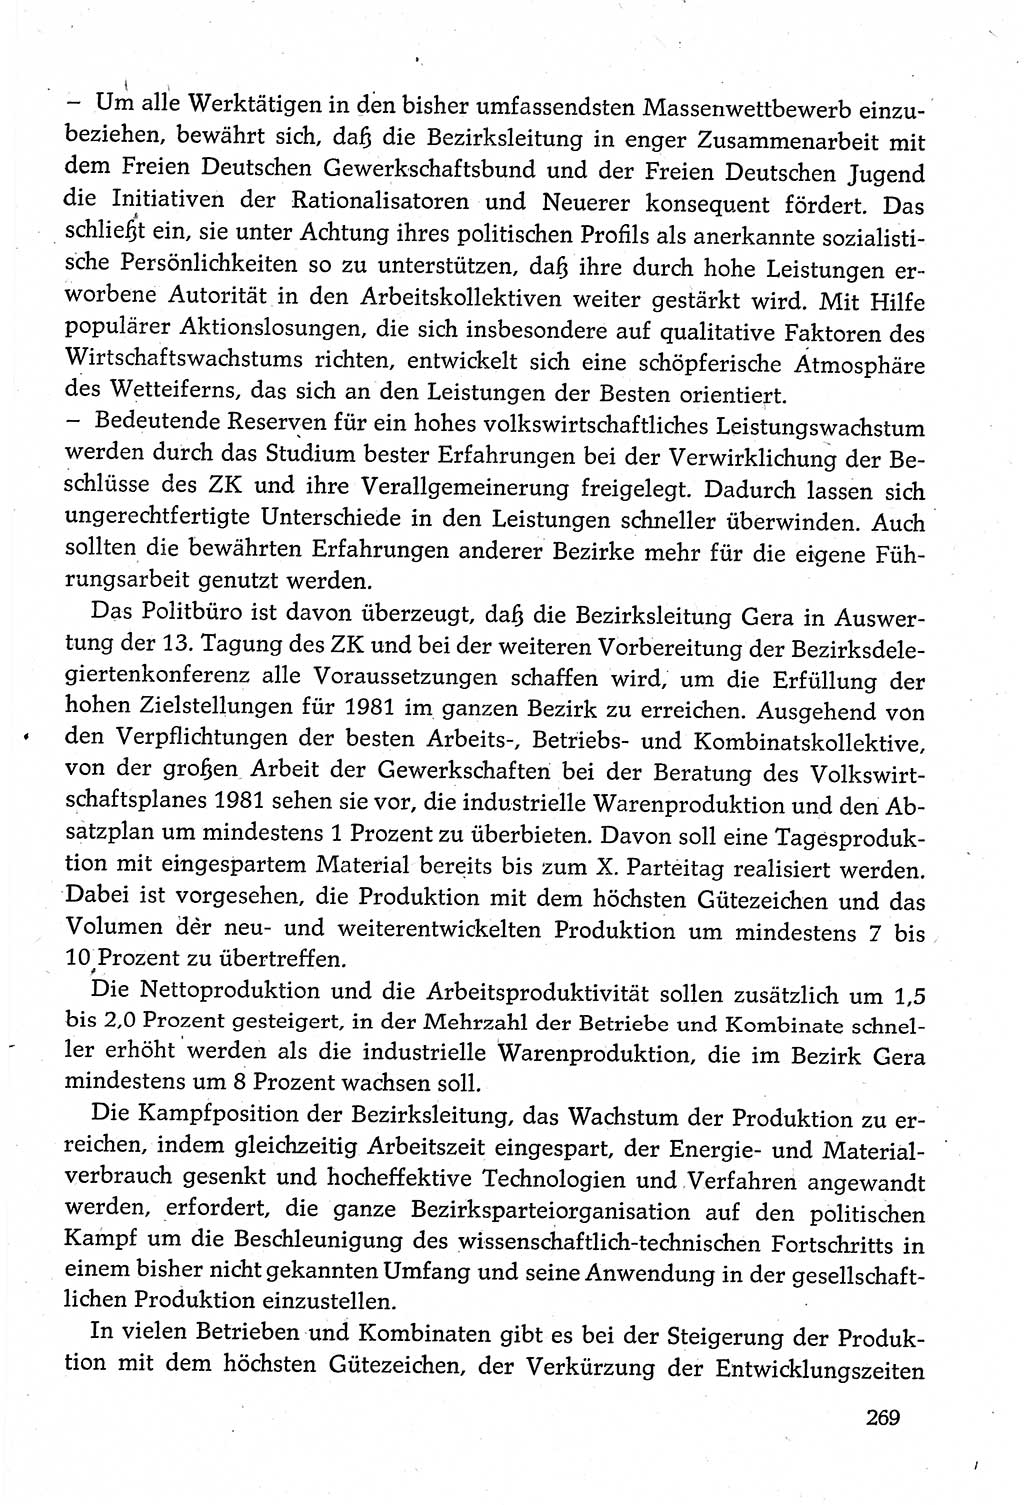 Dokumente der Sozialistischen Einheitspartei Deutschlands (SED) [Deutsche Demokratische Republik (DDR)] 1980-1981, Seite 269 (Dok. SED DDR 1980-1981, S. 269)